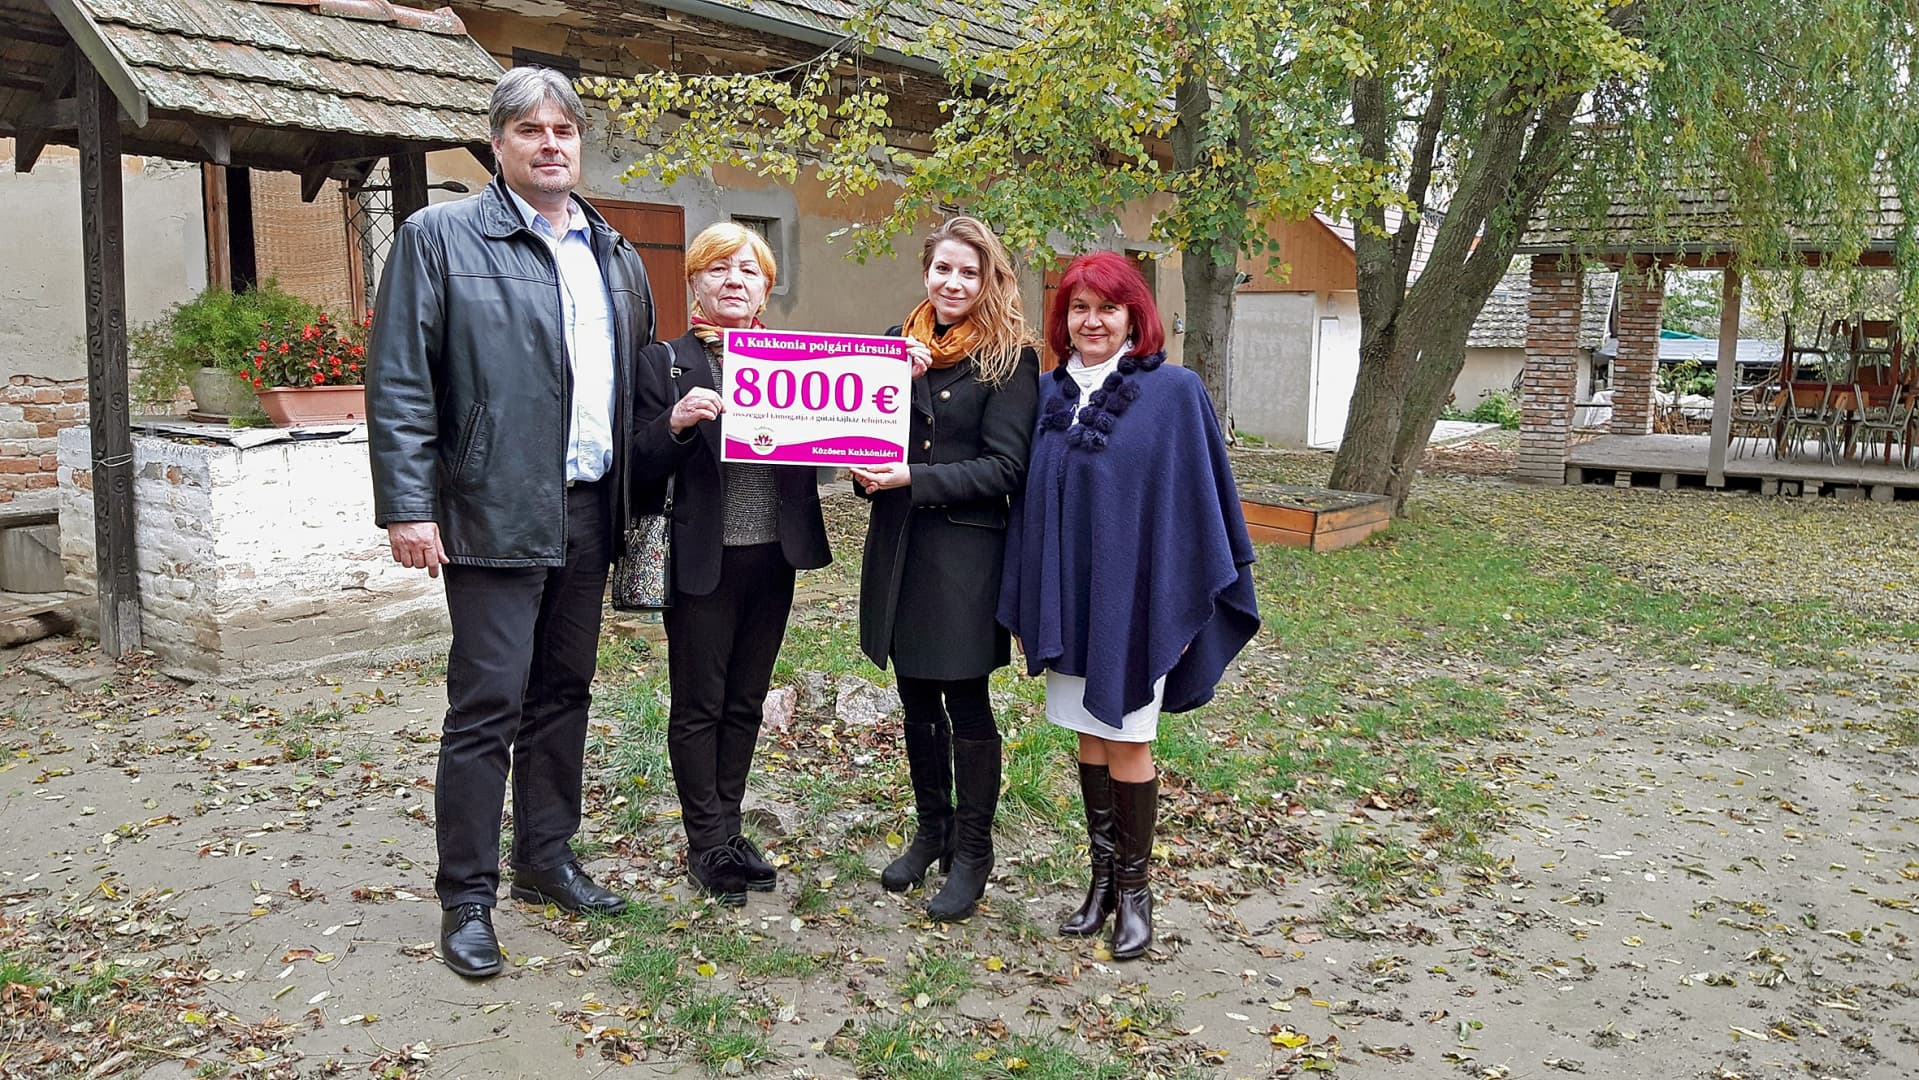 A Kukkonia polgári társulás 8000 euróval támogatja a gútai tájház felújítását